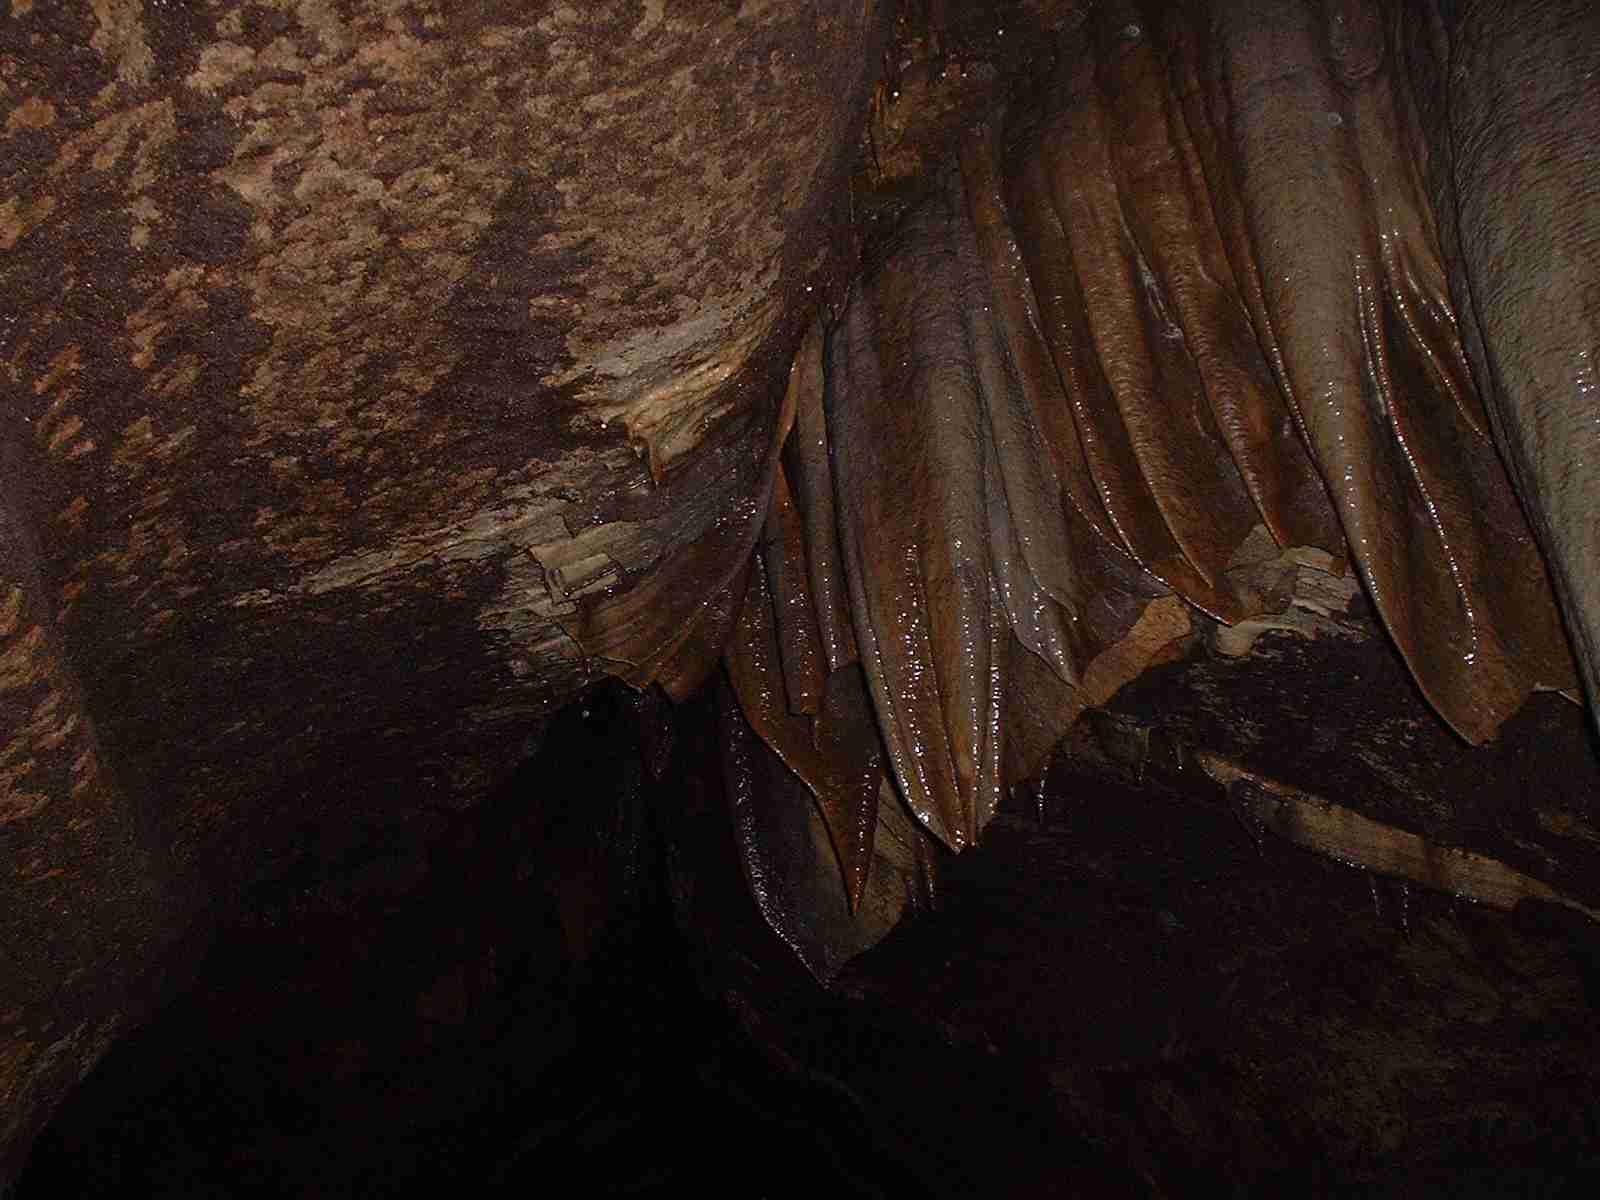 Iron-rich stalactites